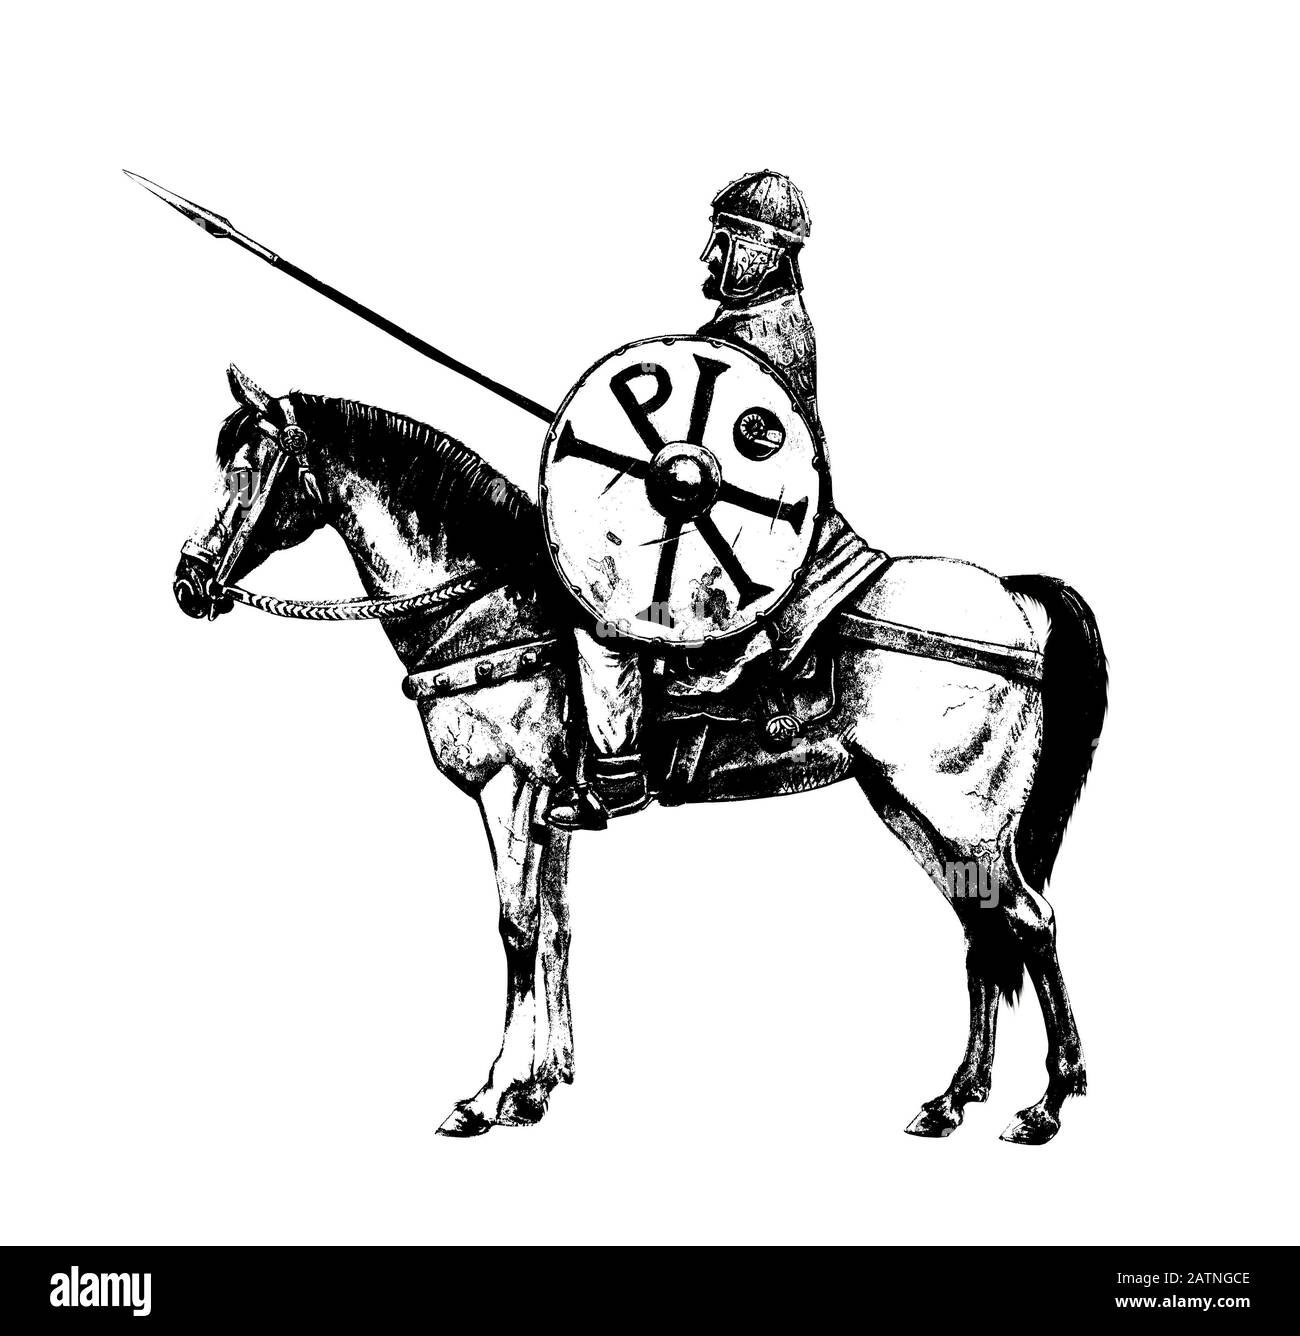 Der alte, byzantinische Reiter. Uralter Krieger zu Pferd. Chi Rho auf dem Schild des Ritters. Schwarz-weiße Abbildung. Stockfoto